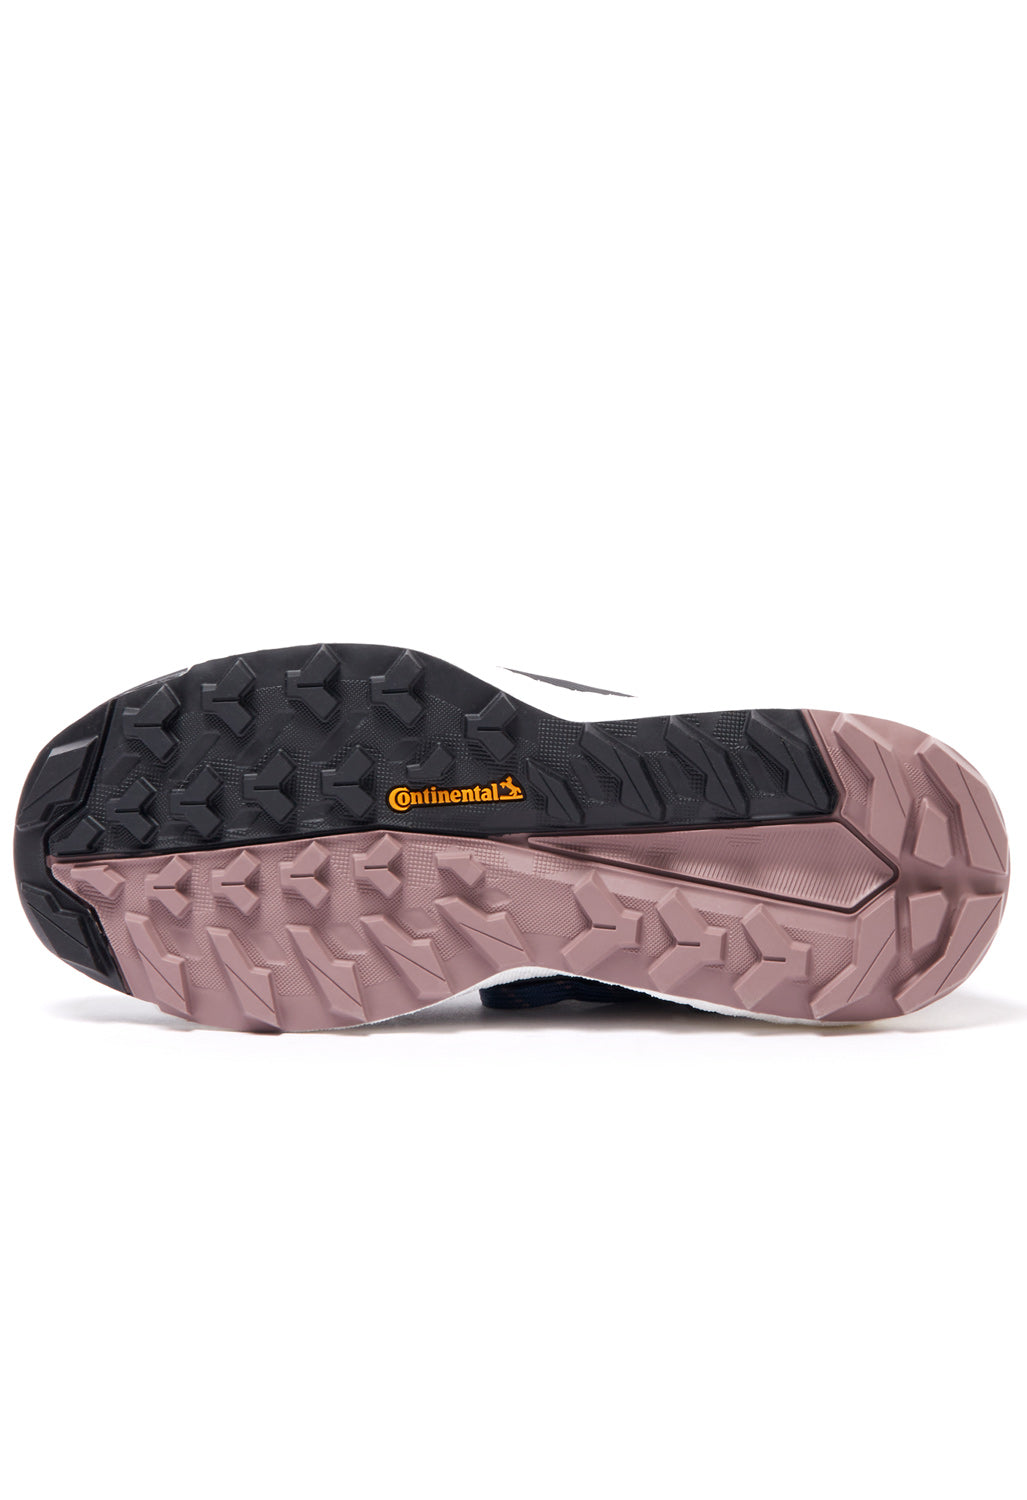 adidas TERREX Free Hiker 2 Women's Boots - Wonder Steel/Grey Three/Wonder Oxide